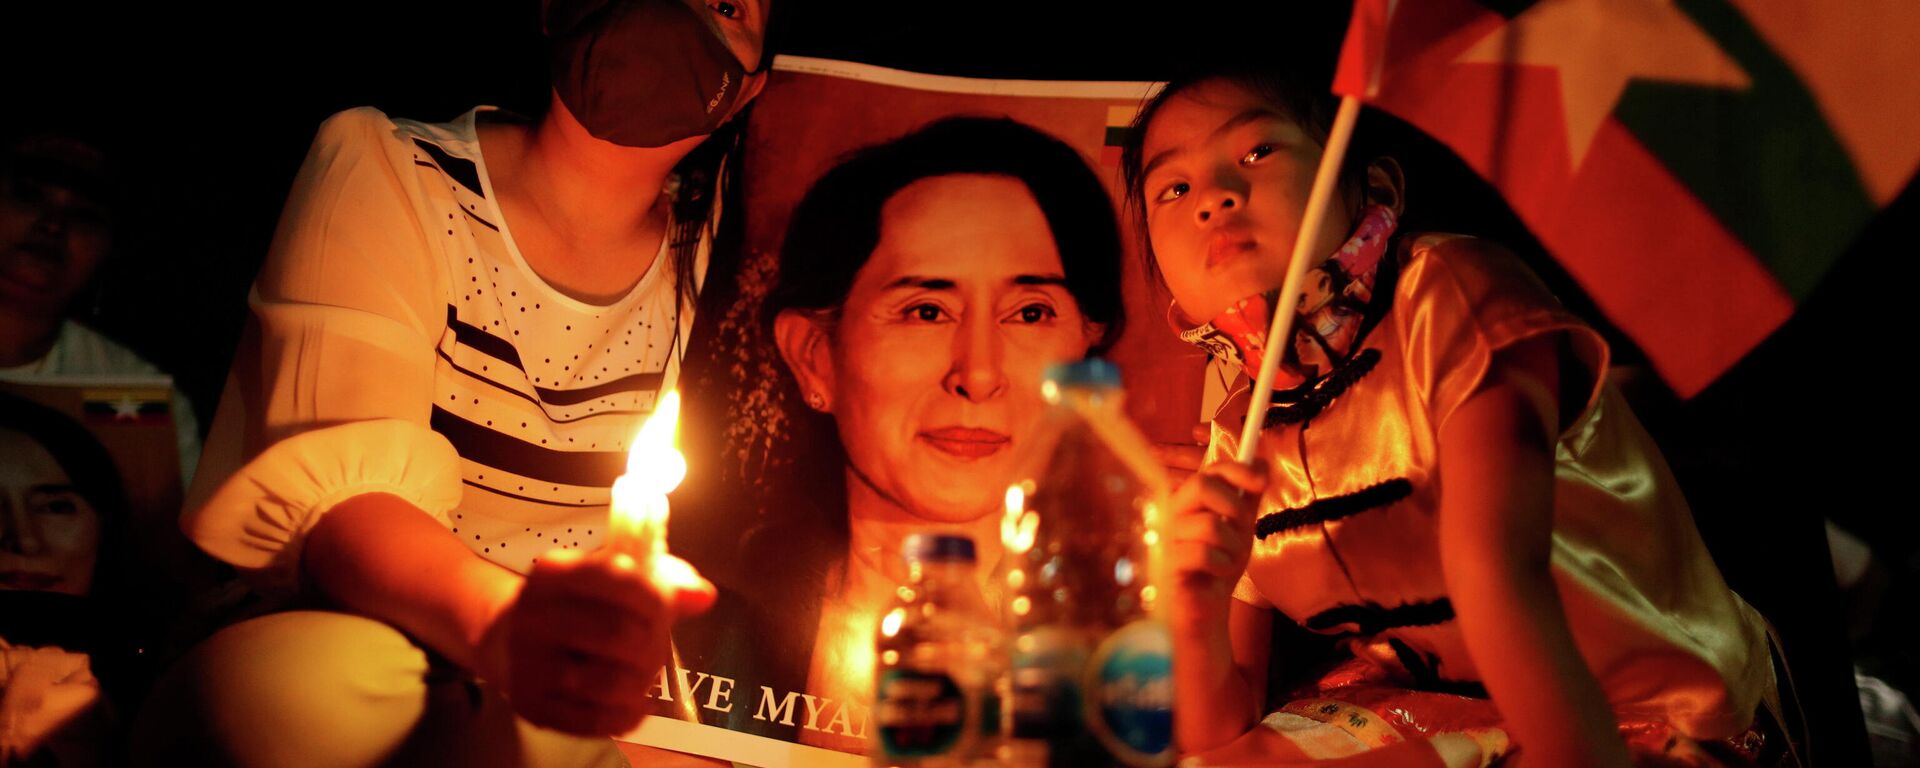 Protestantes con una foto de Aung San Suu Kyi, consejera de Estado derrocada - Sputnik Mundo, 1920, 01.04.2021